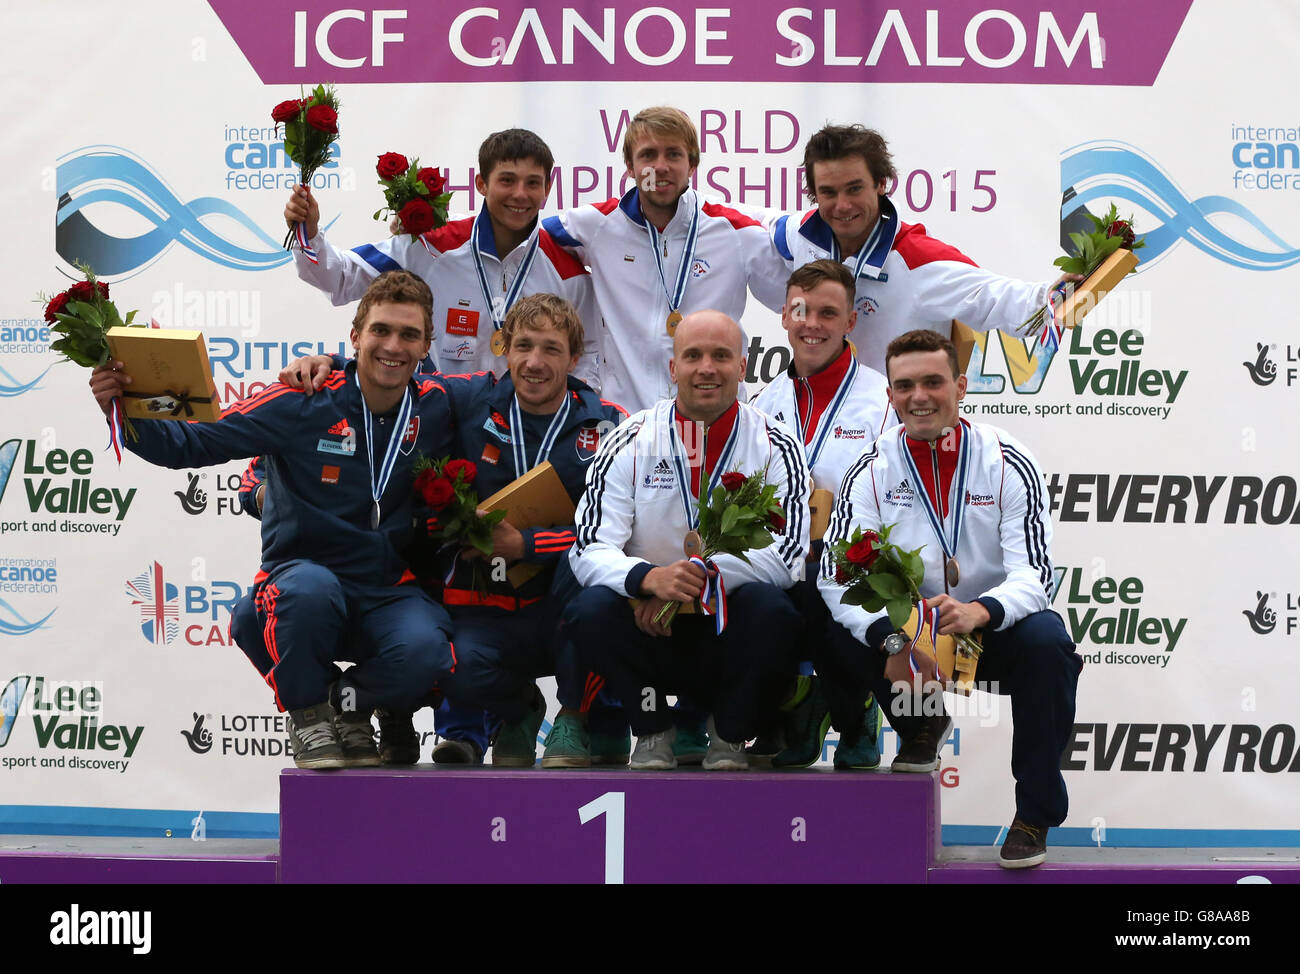 Das Team Tschechische Republik feiert den Goldsieg beim K1 Team Event der Männer, zusammen mit dem Team Slovakia, das Silber gewann, und dem Team Großbritannien, das Bronze gewann, am fünften Tag der ICF Kanuslalom-Weltmeisterschaft 2015 im Lee Valley White Water Centre, London. Stockfoto